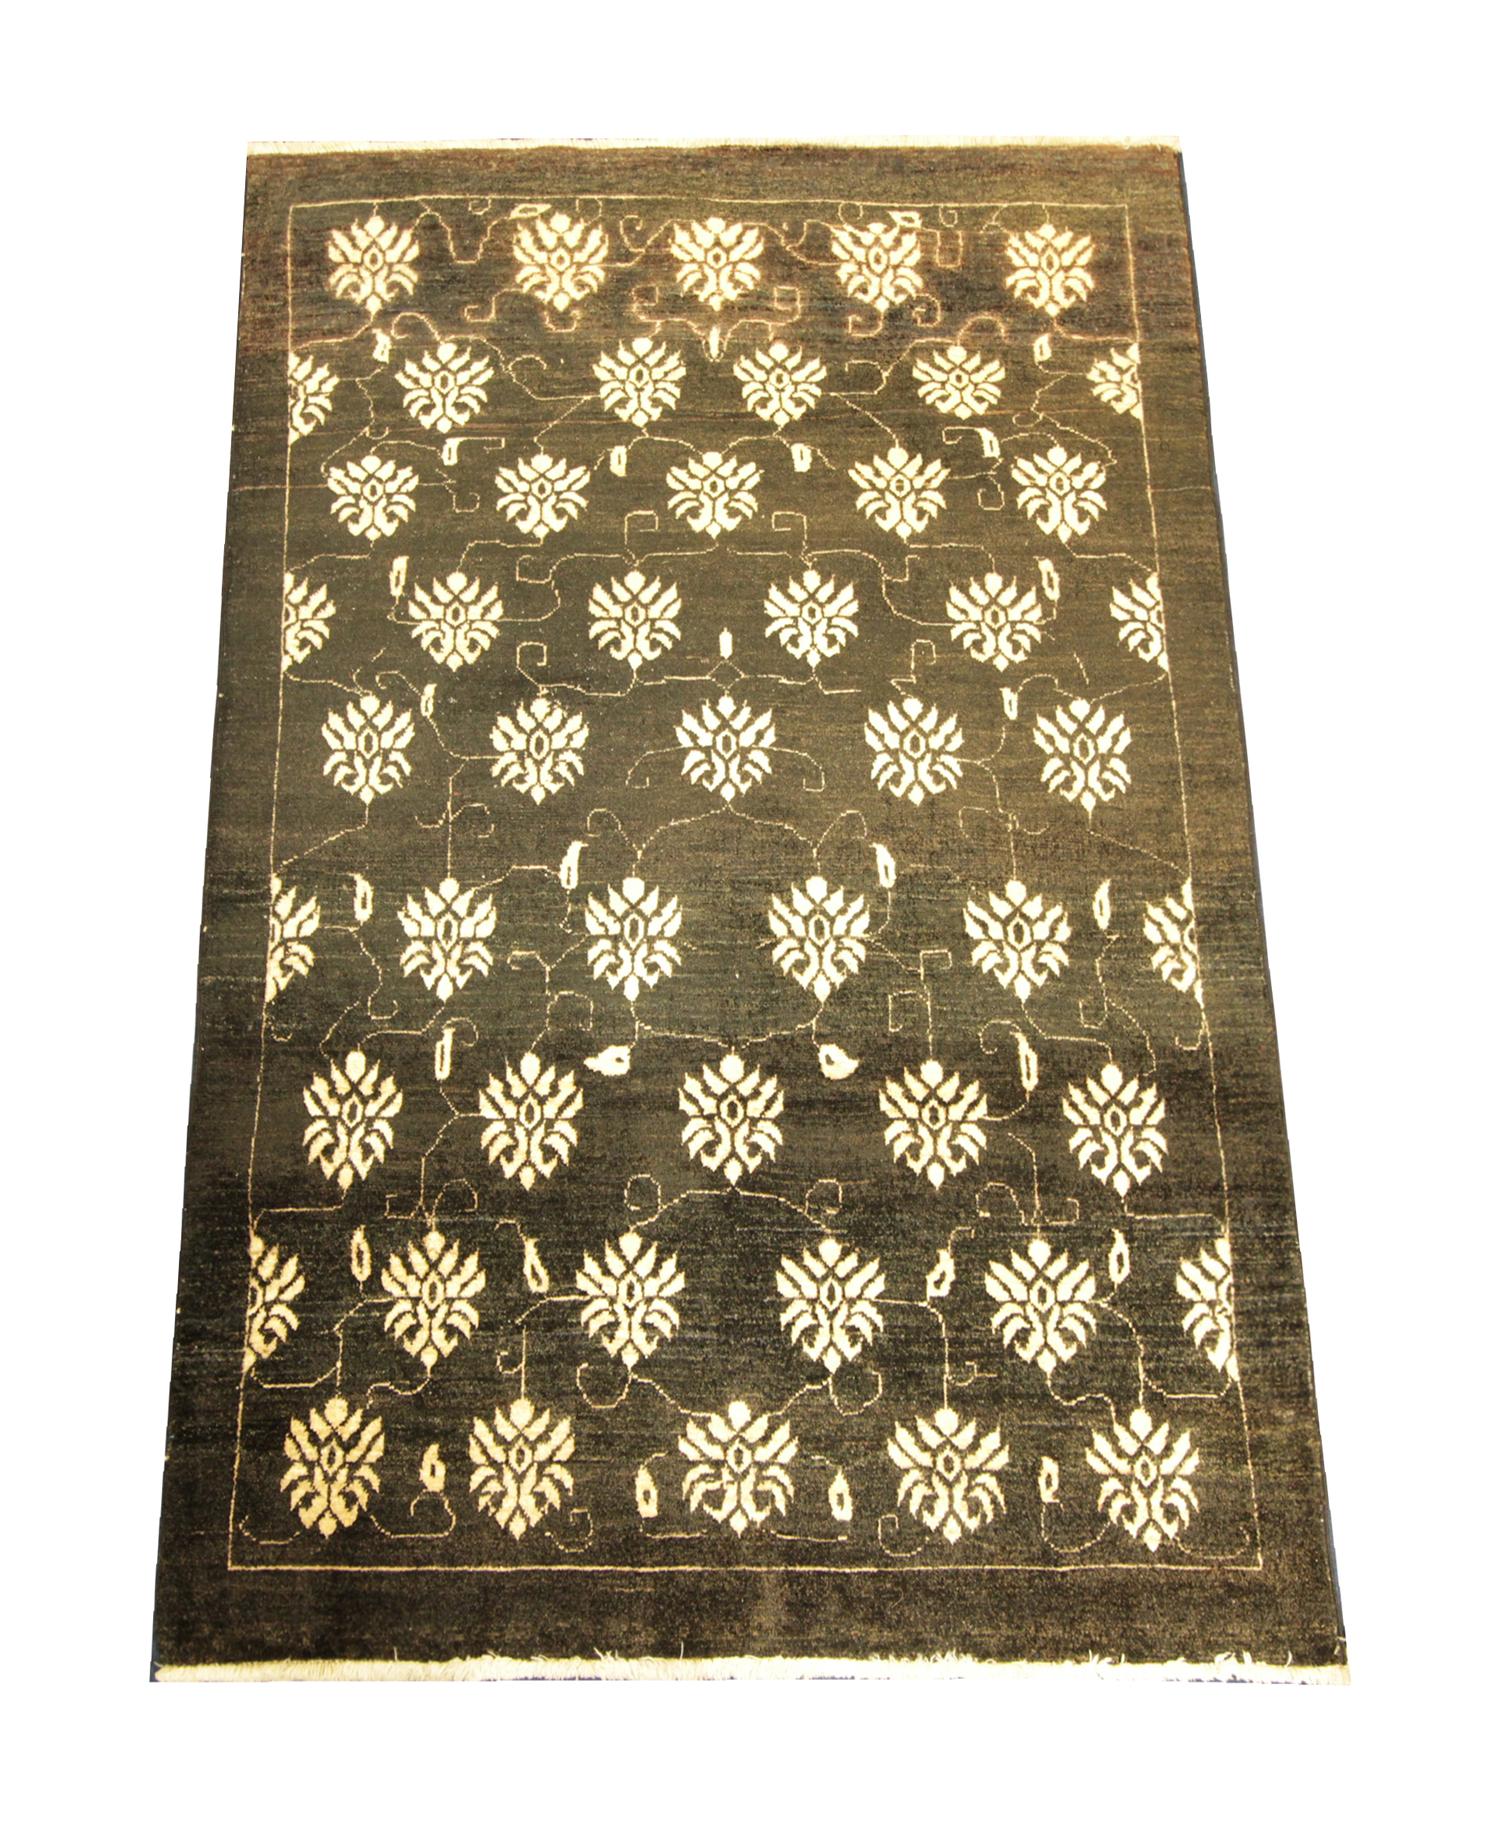 Dieser türkische Teppich aus feiner Wolle wurde aus den besten organischen Materialien gewebt. Das zentrale Muster wurde auf einem schwarzen Hintergrund mit einem floralen All-Over-Muster gewebt, das von einer einfachen, linearen, cremefarbenen